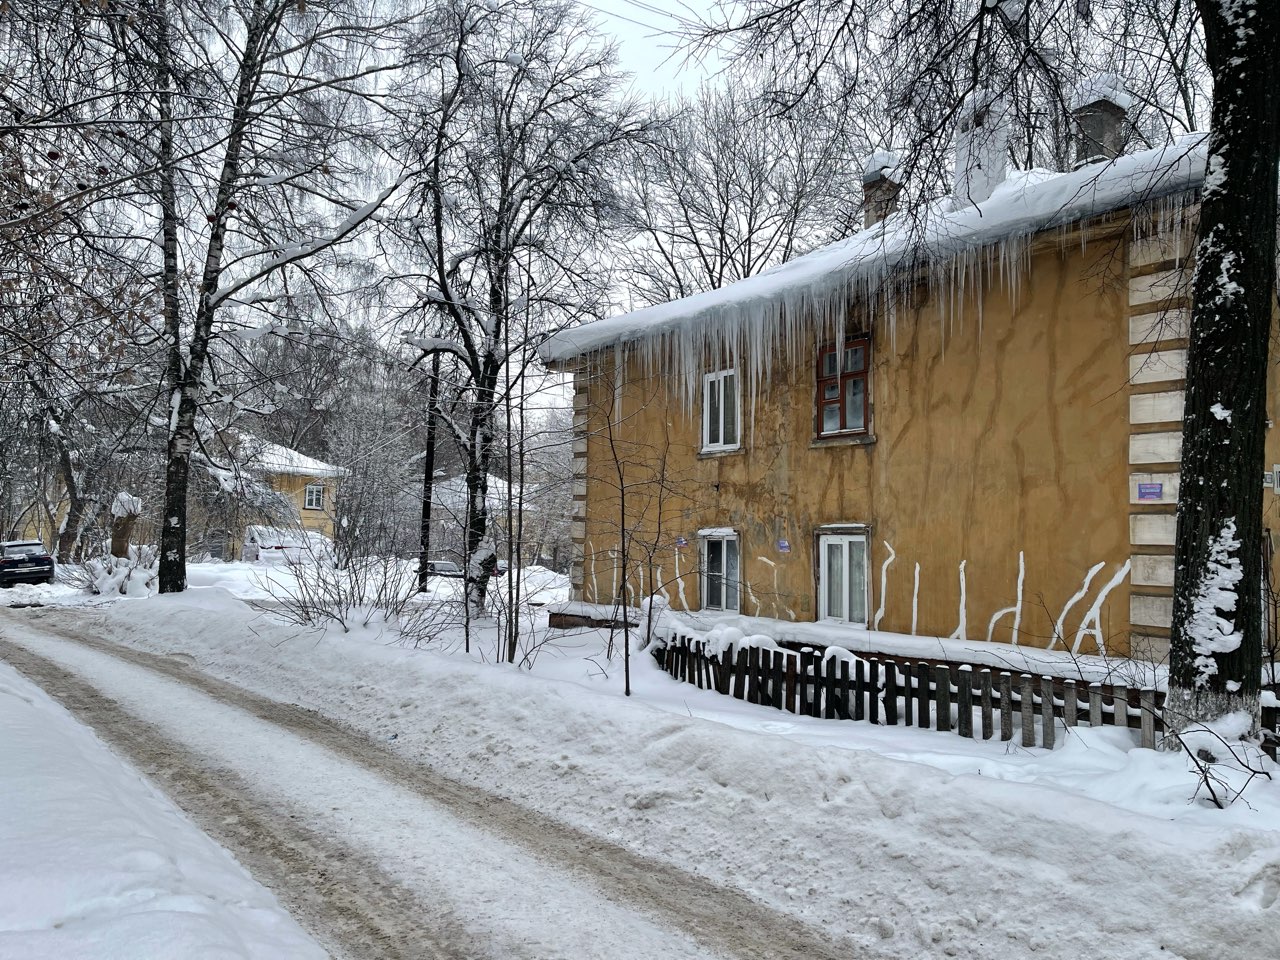 786 нарушений при уборке снега с крыш выявили в Нижегородской области с начала холодов - фото 1